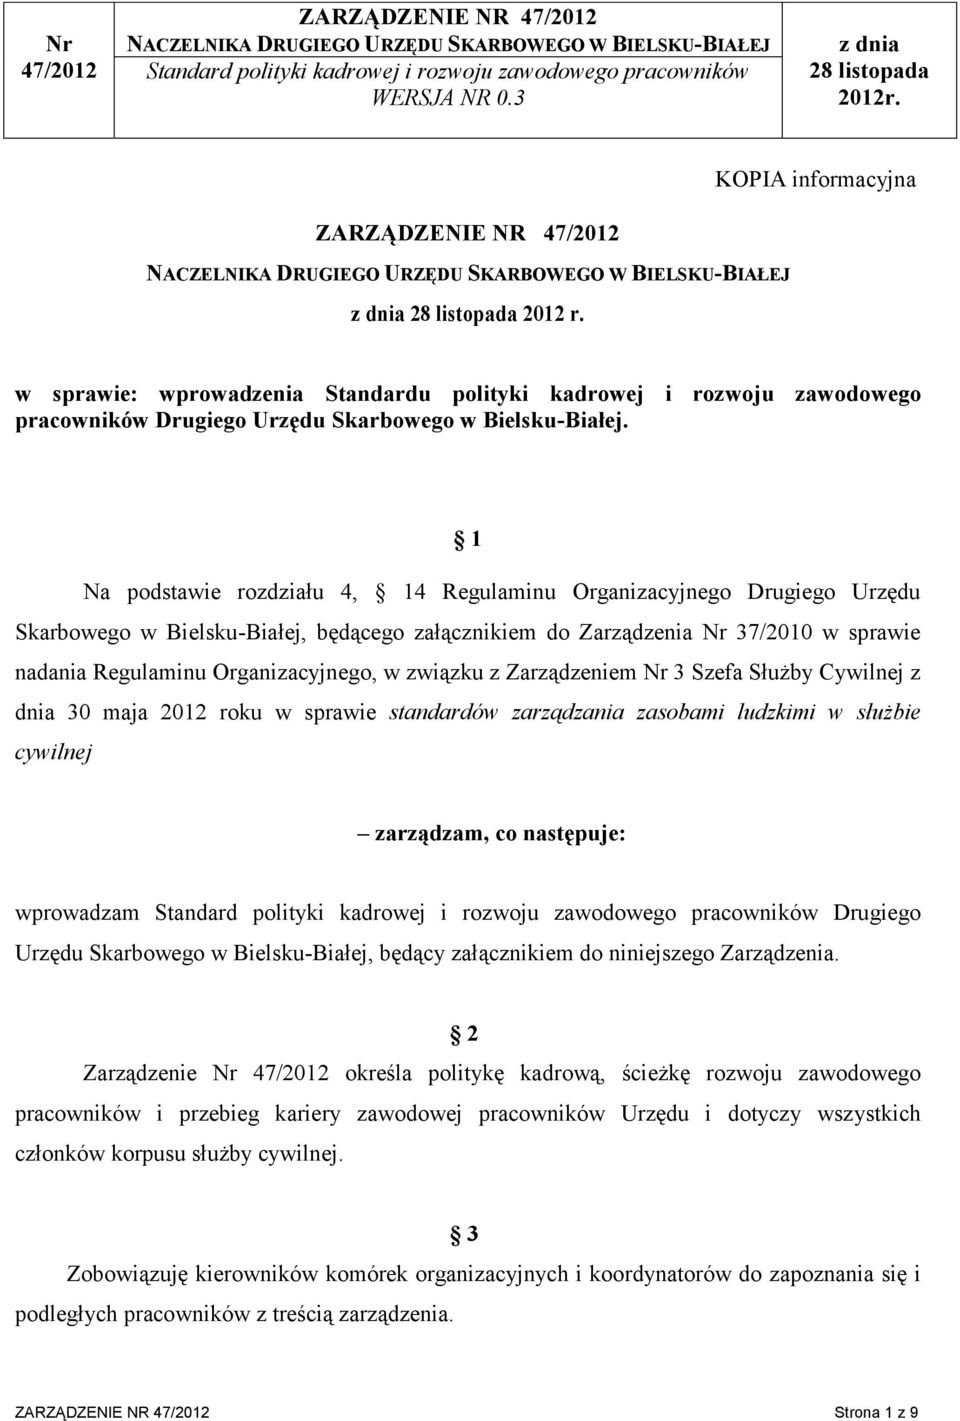 w sprawie: wprowadzenia Standardu polityki kadrowej i rozwoju zawodowego pracowników Drugiego Urzędu Skarbowego w Bielsku-Białej.